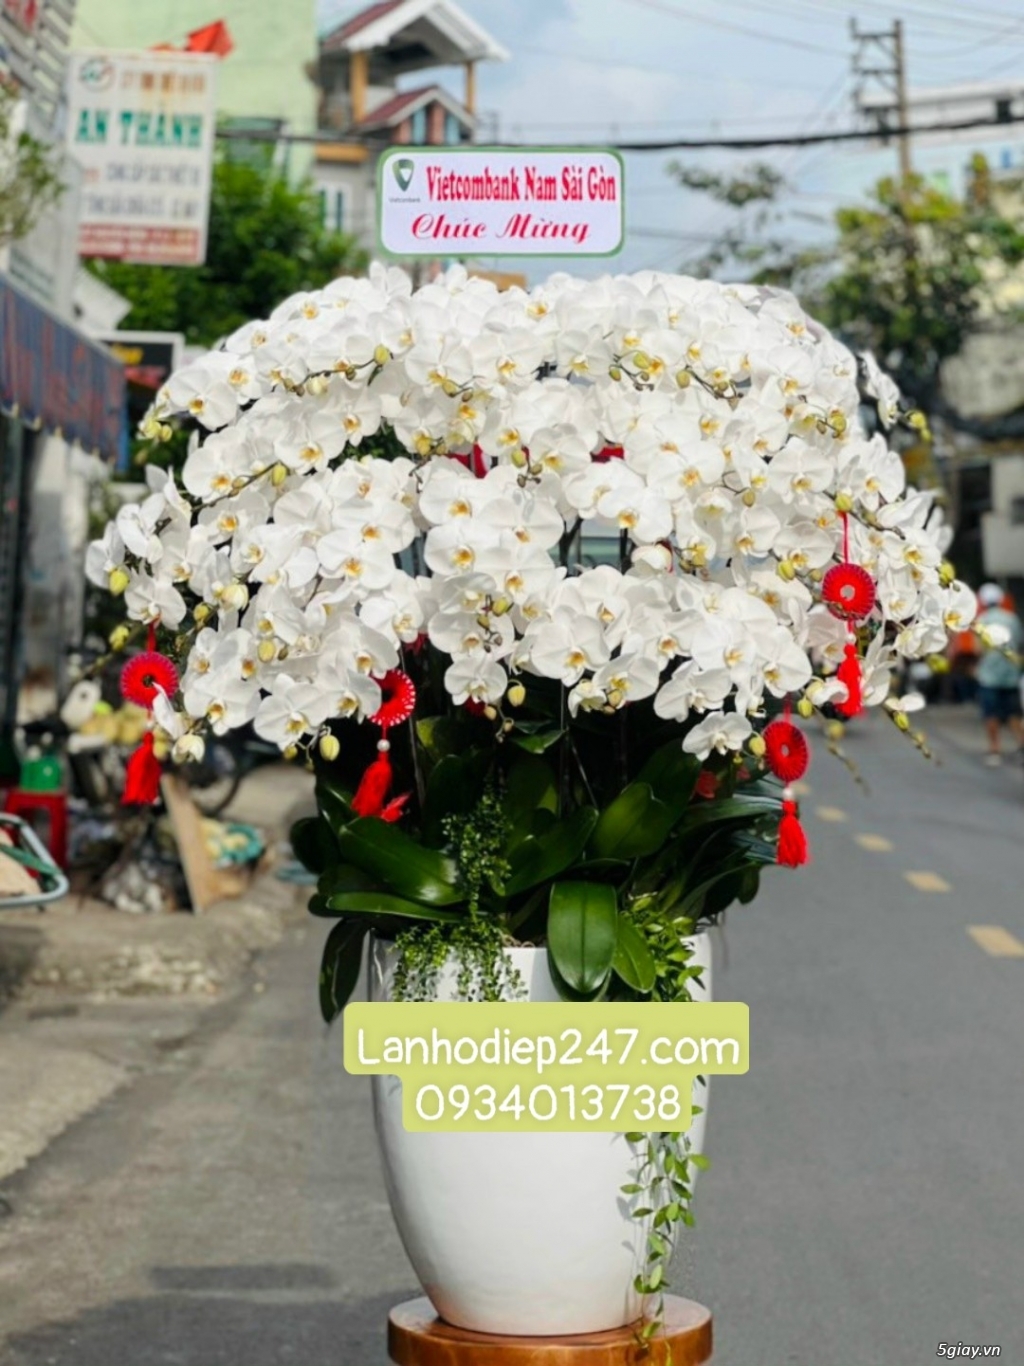 Liệt kê những mẫu Lan Hồ Điệp đẹp xuất sắc tại Hoa Lan Sài Gòn 247 - 12